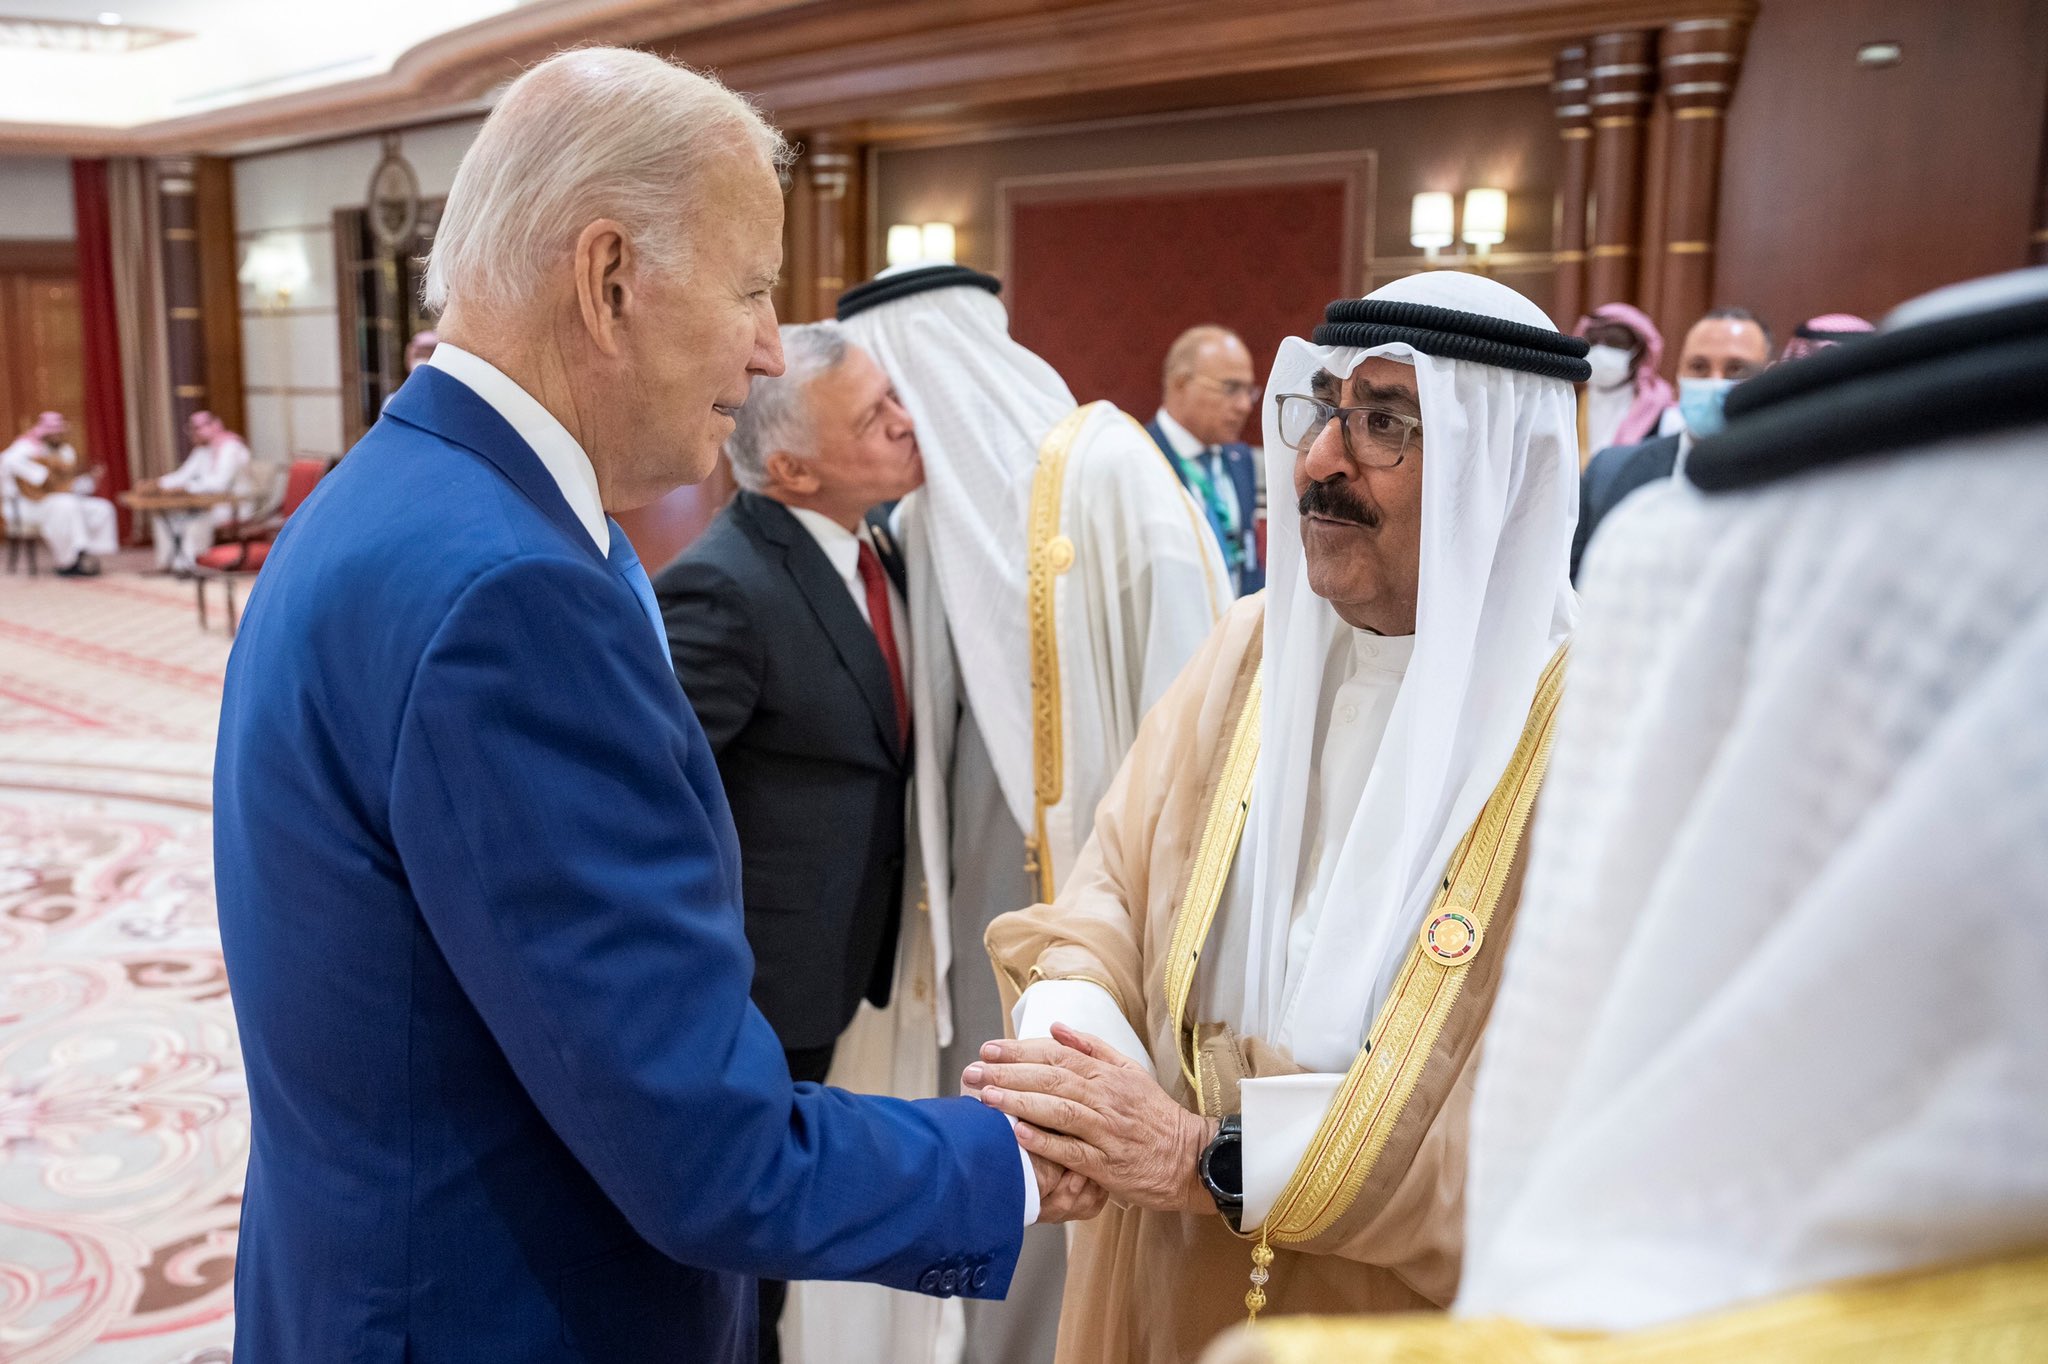 حضرة صاحب السمو أمير البلاد الشيخ مشعل الأحمد الجابر الصباح مع الرئيس الأمريكي جو بايدن